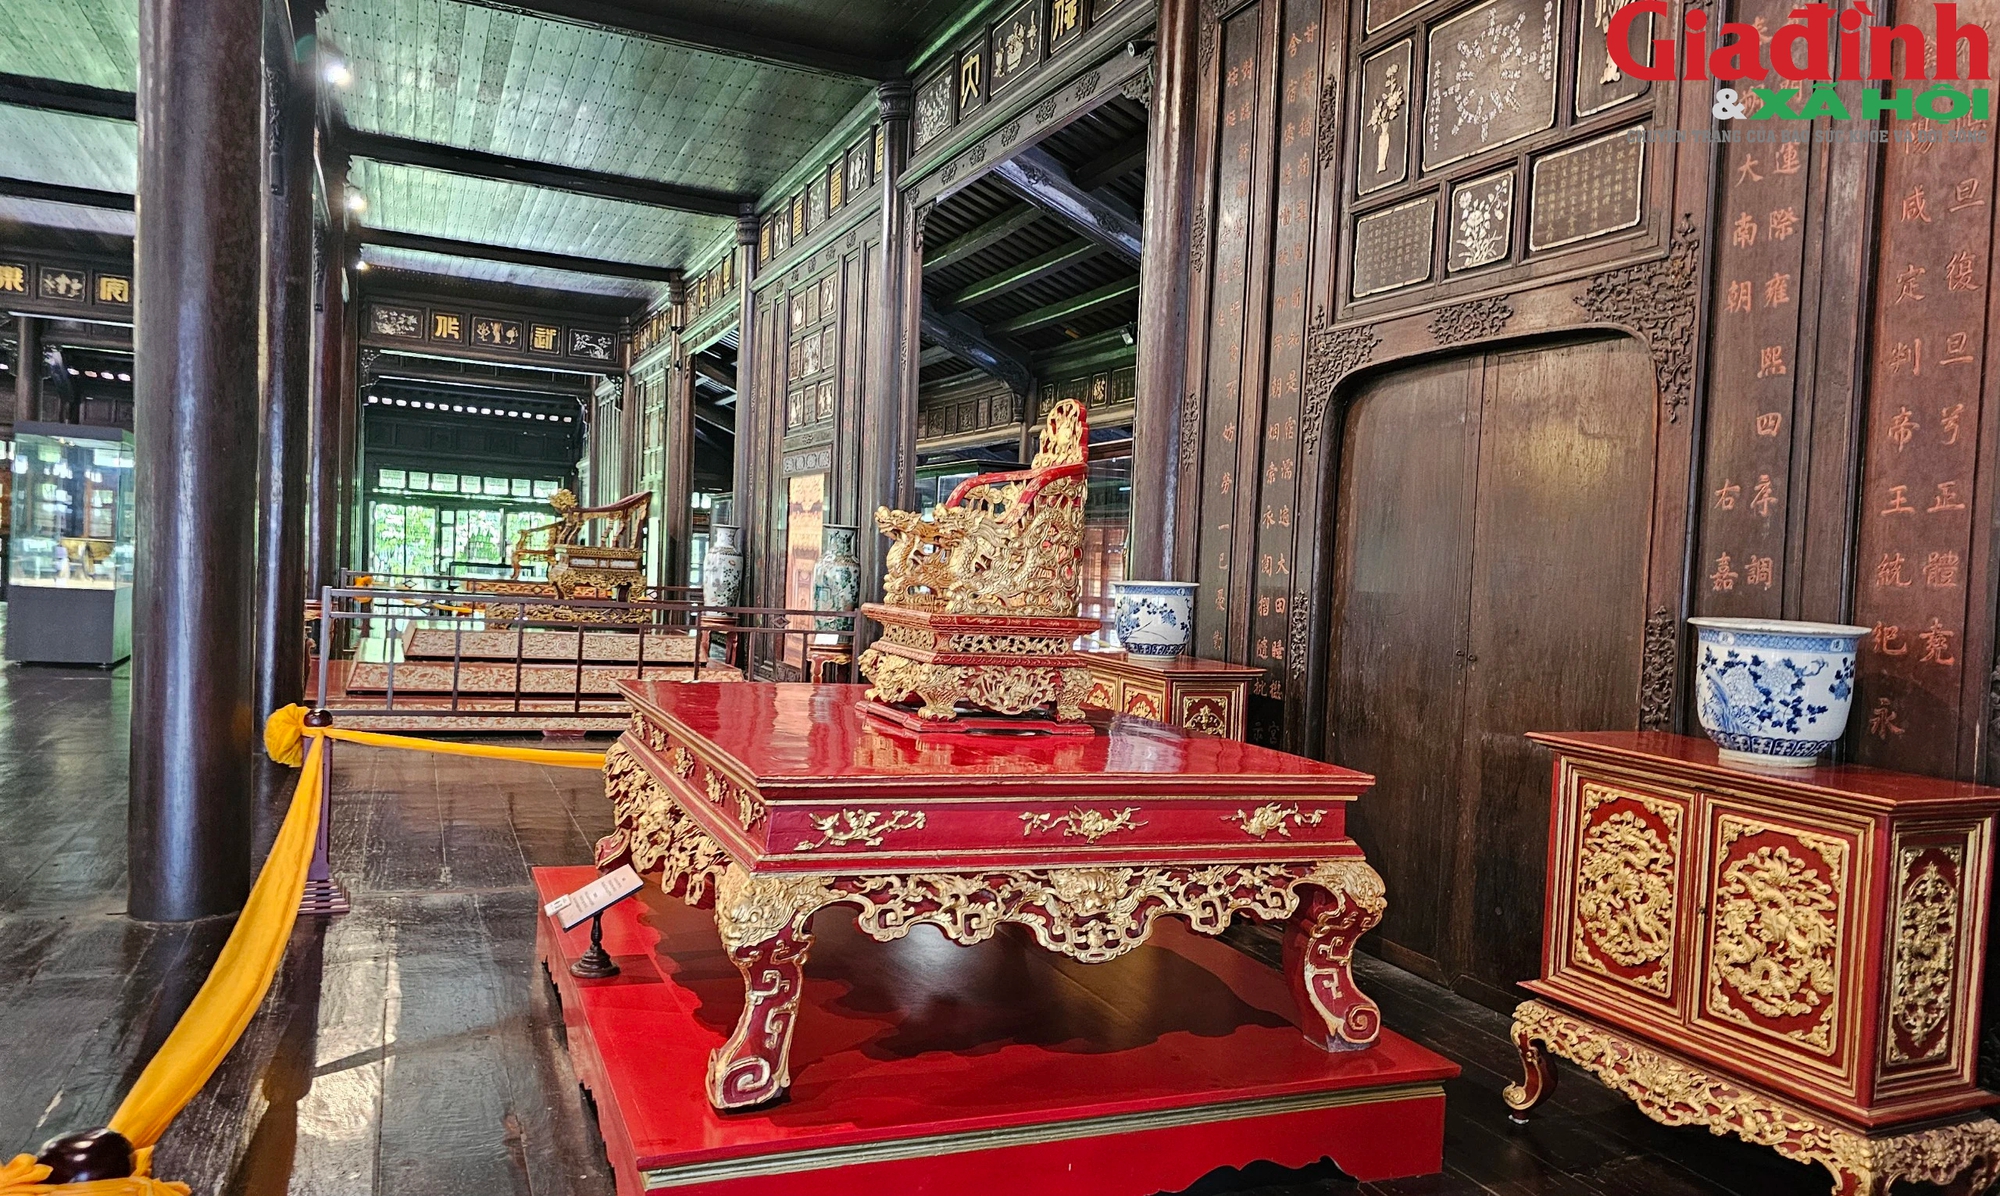 Chiêm ngưỡng loạt cổ vật quý triều Nguyễn vừa được định danh số - Ảnh 7.